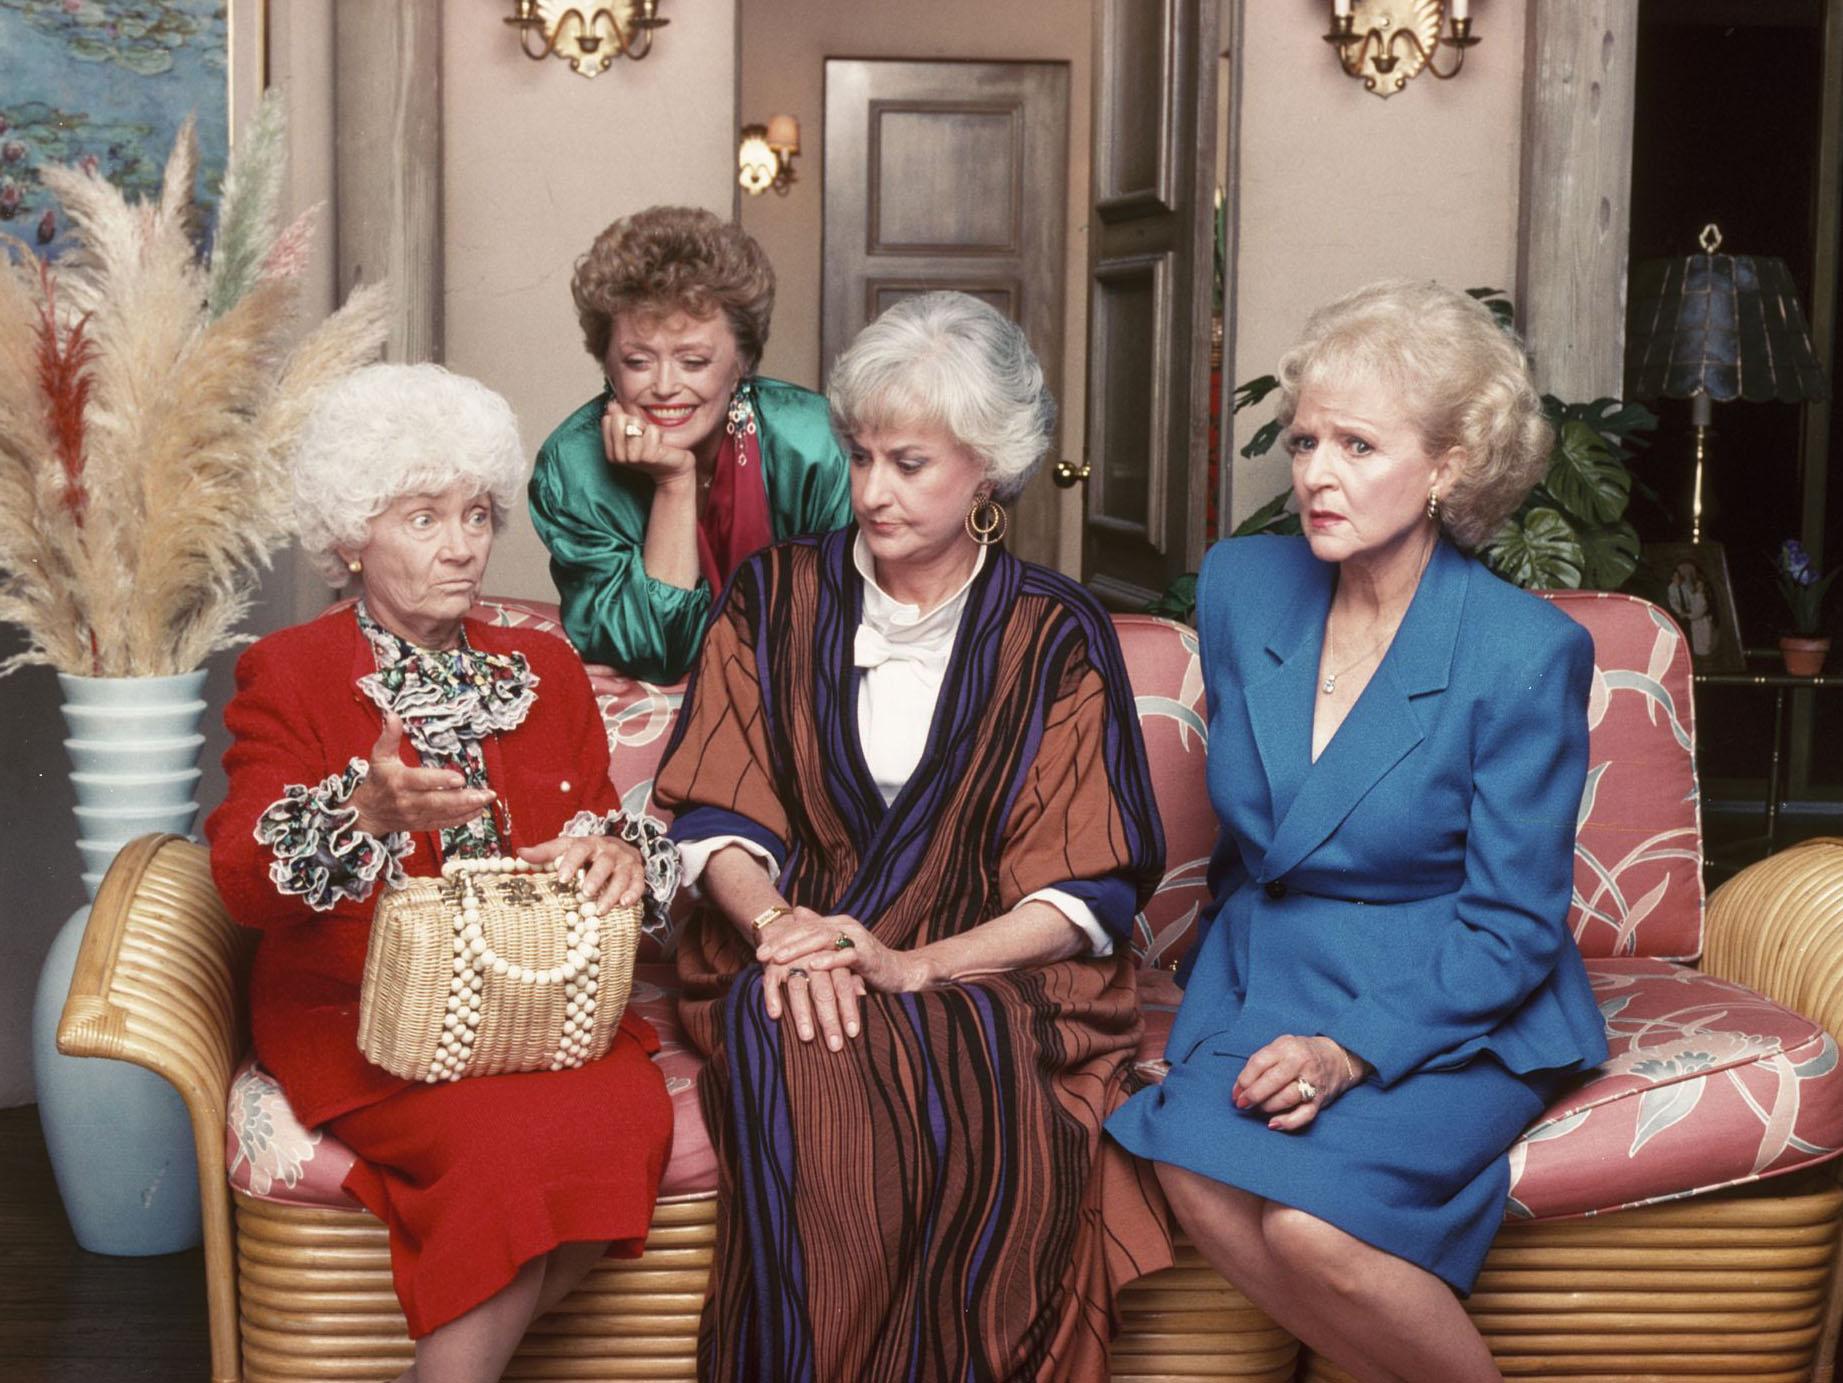 A 1988 episode of The Golden Girls featured a scene involving a blackface joke